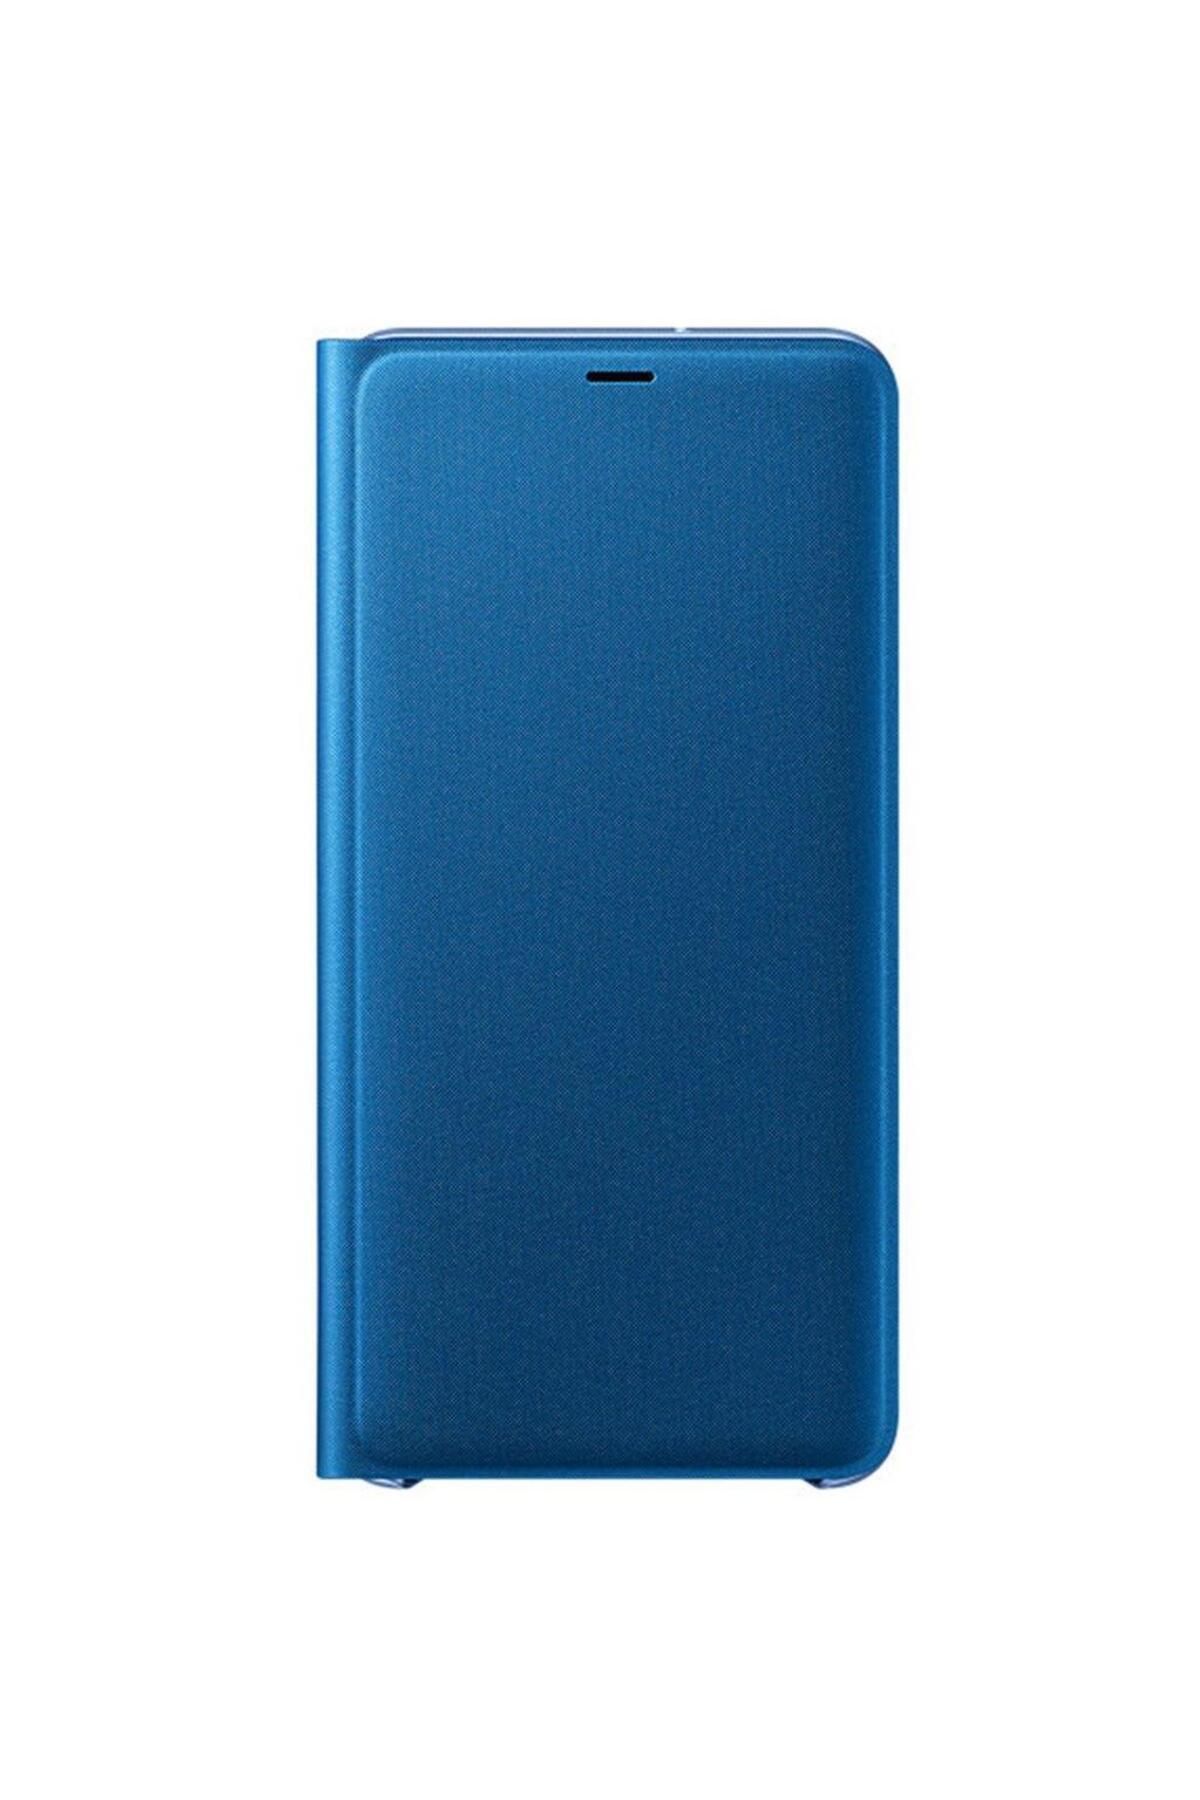 Samsung Galaxy A7 2018 Wallet Cover Kılıf Mavi Ef-wa7500plegww